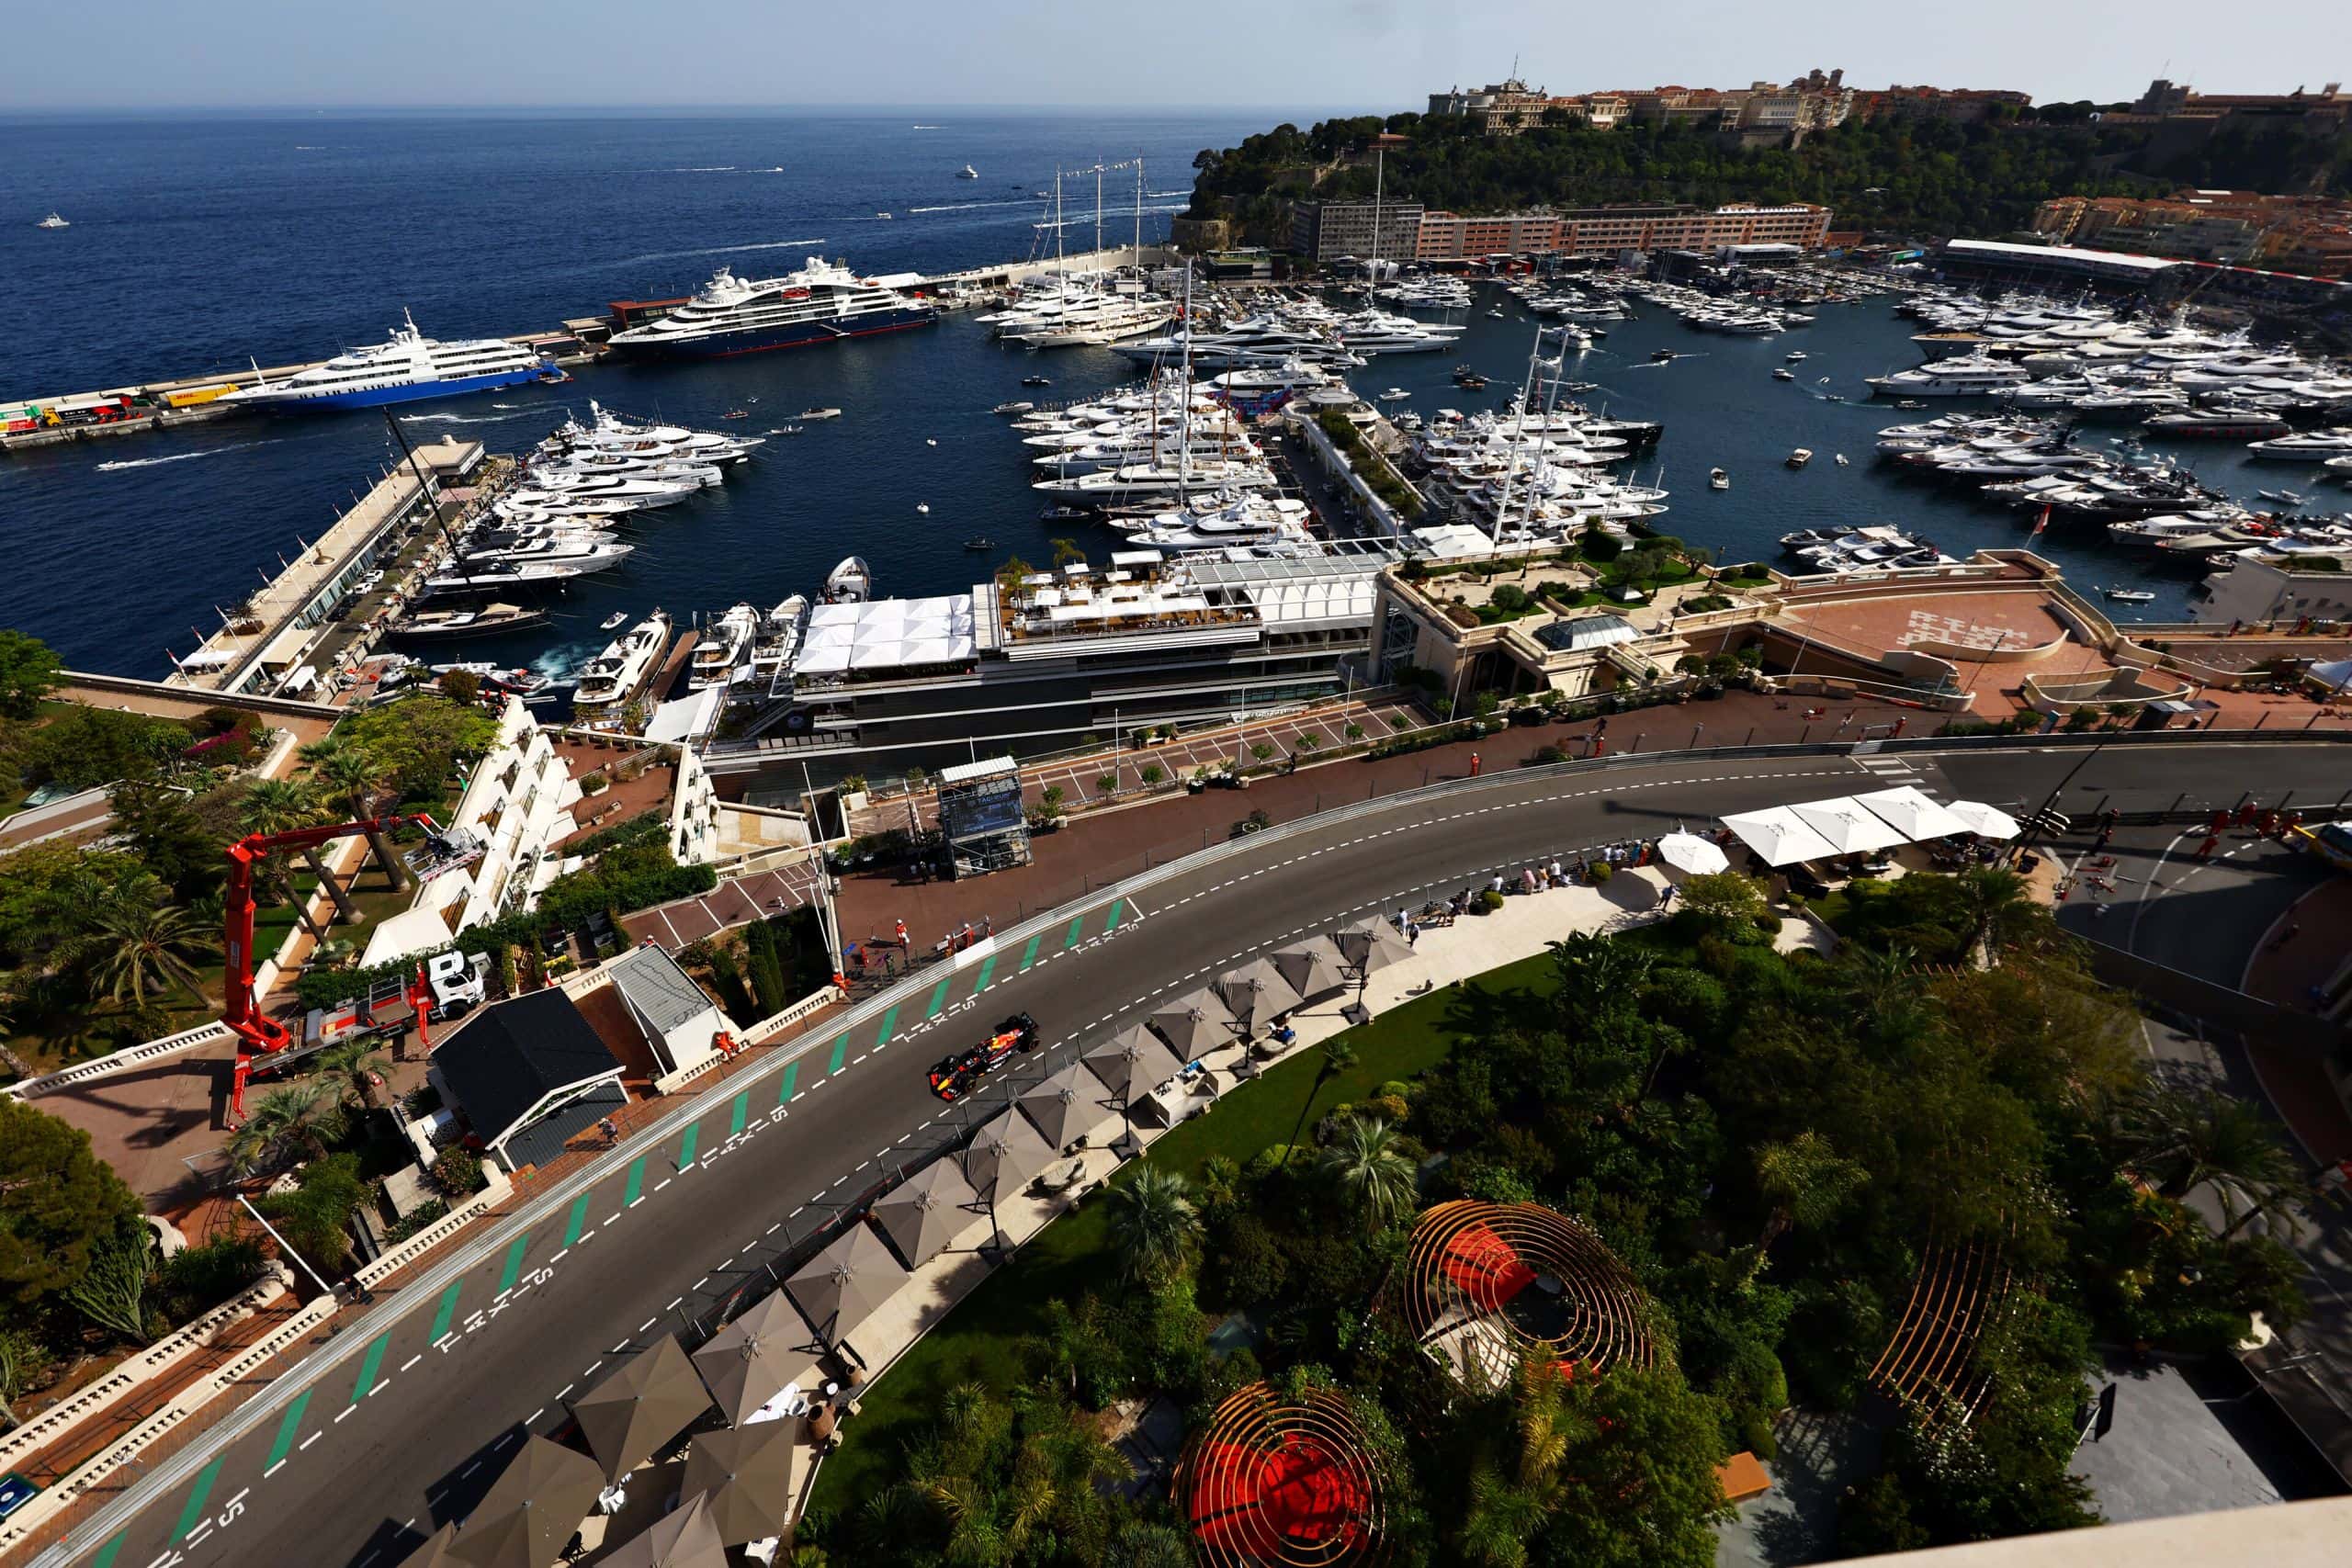 F1 Grand Prix Of Monaco Practice